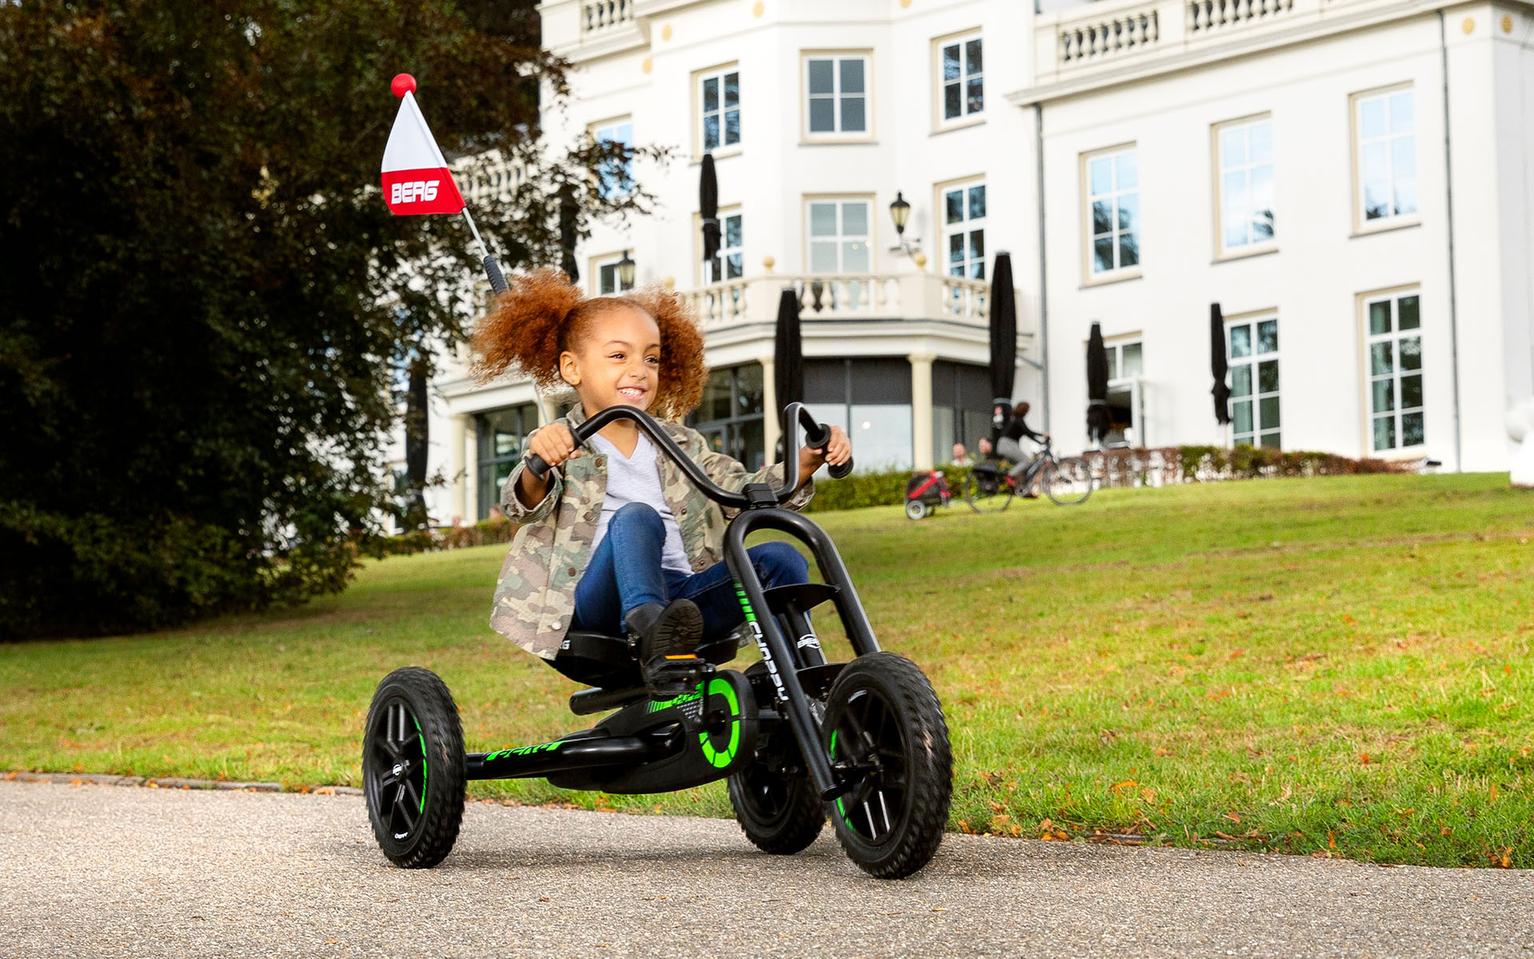 Berg Toys - Buddy Lua Pedal Go Kart - Go Kart - Go Cart for Kids - Pedal  Car  8715839068207